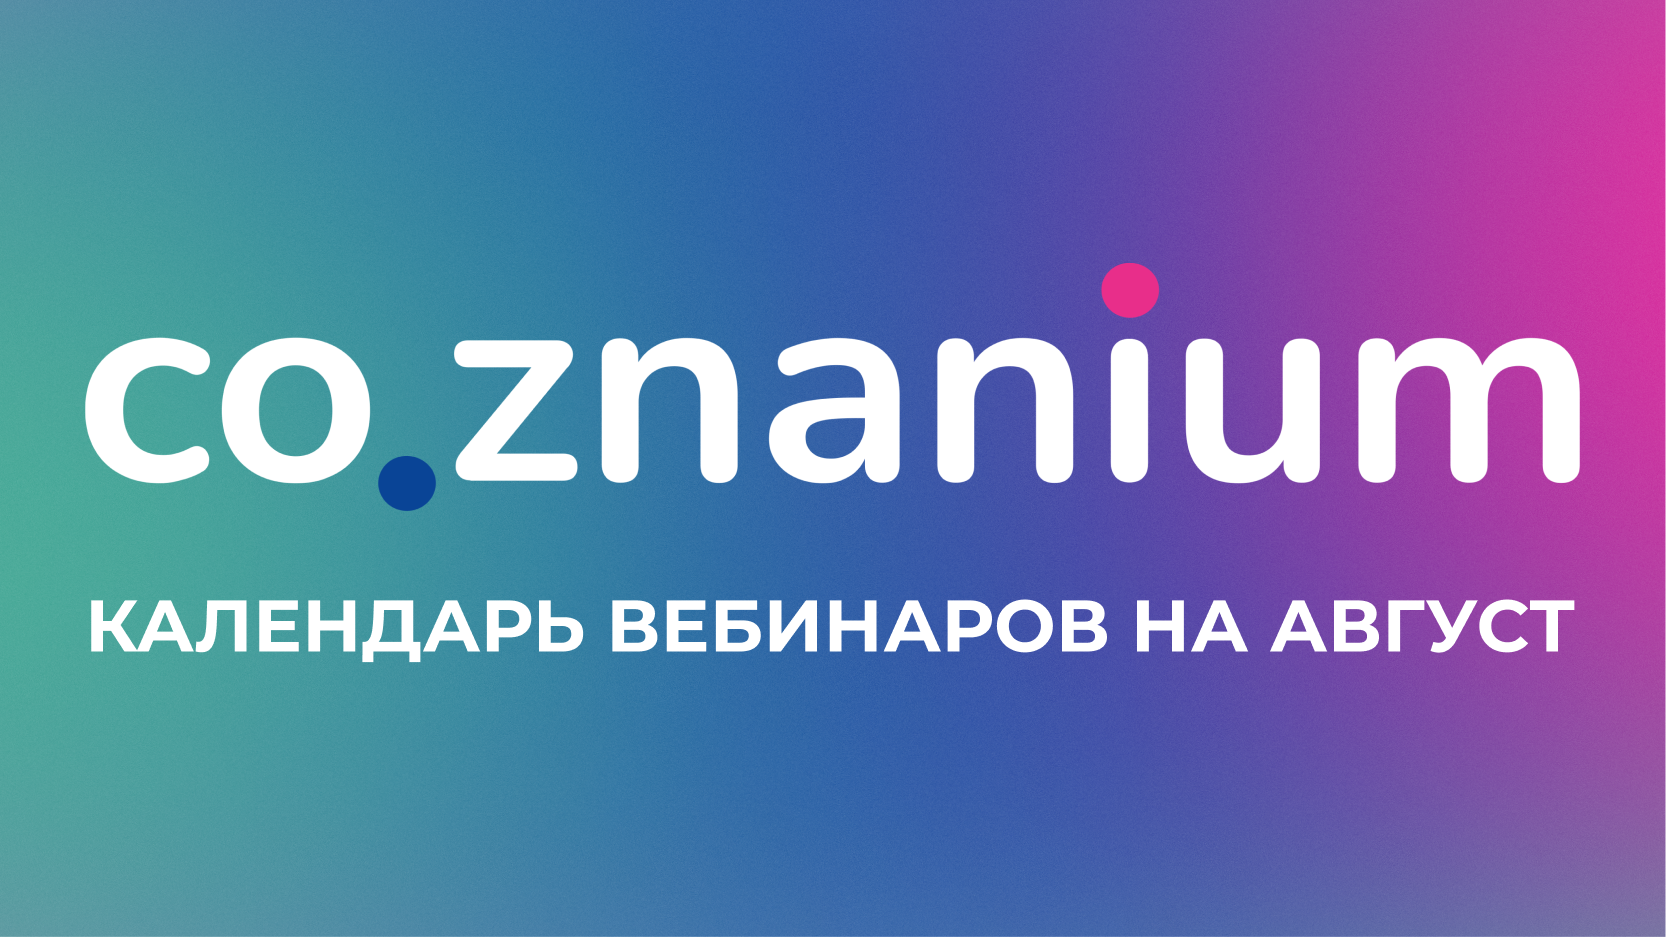 На август мы запланировали 2 вебинара...
 Календарь вебинаров на август | Новости | Znanium.ru